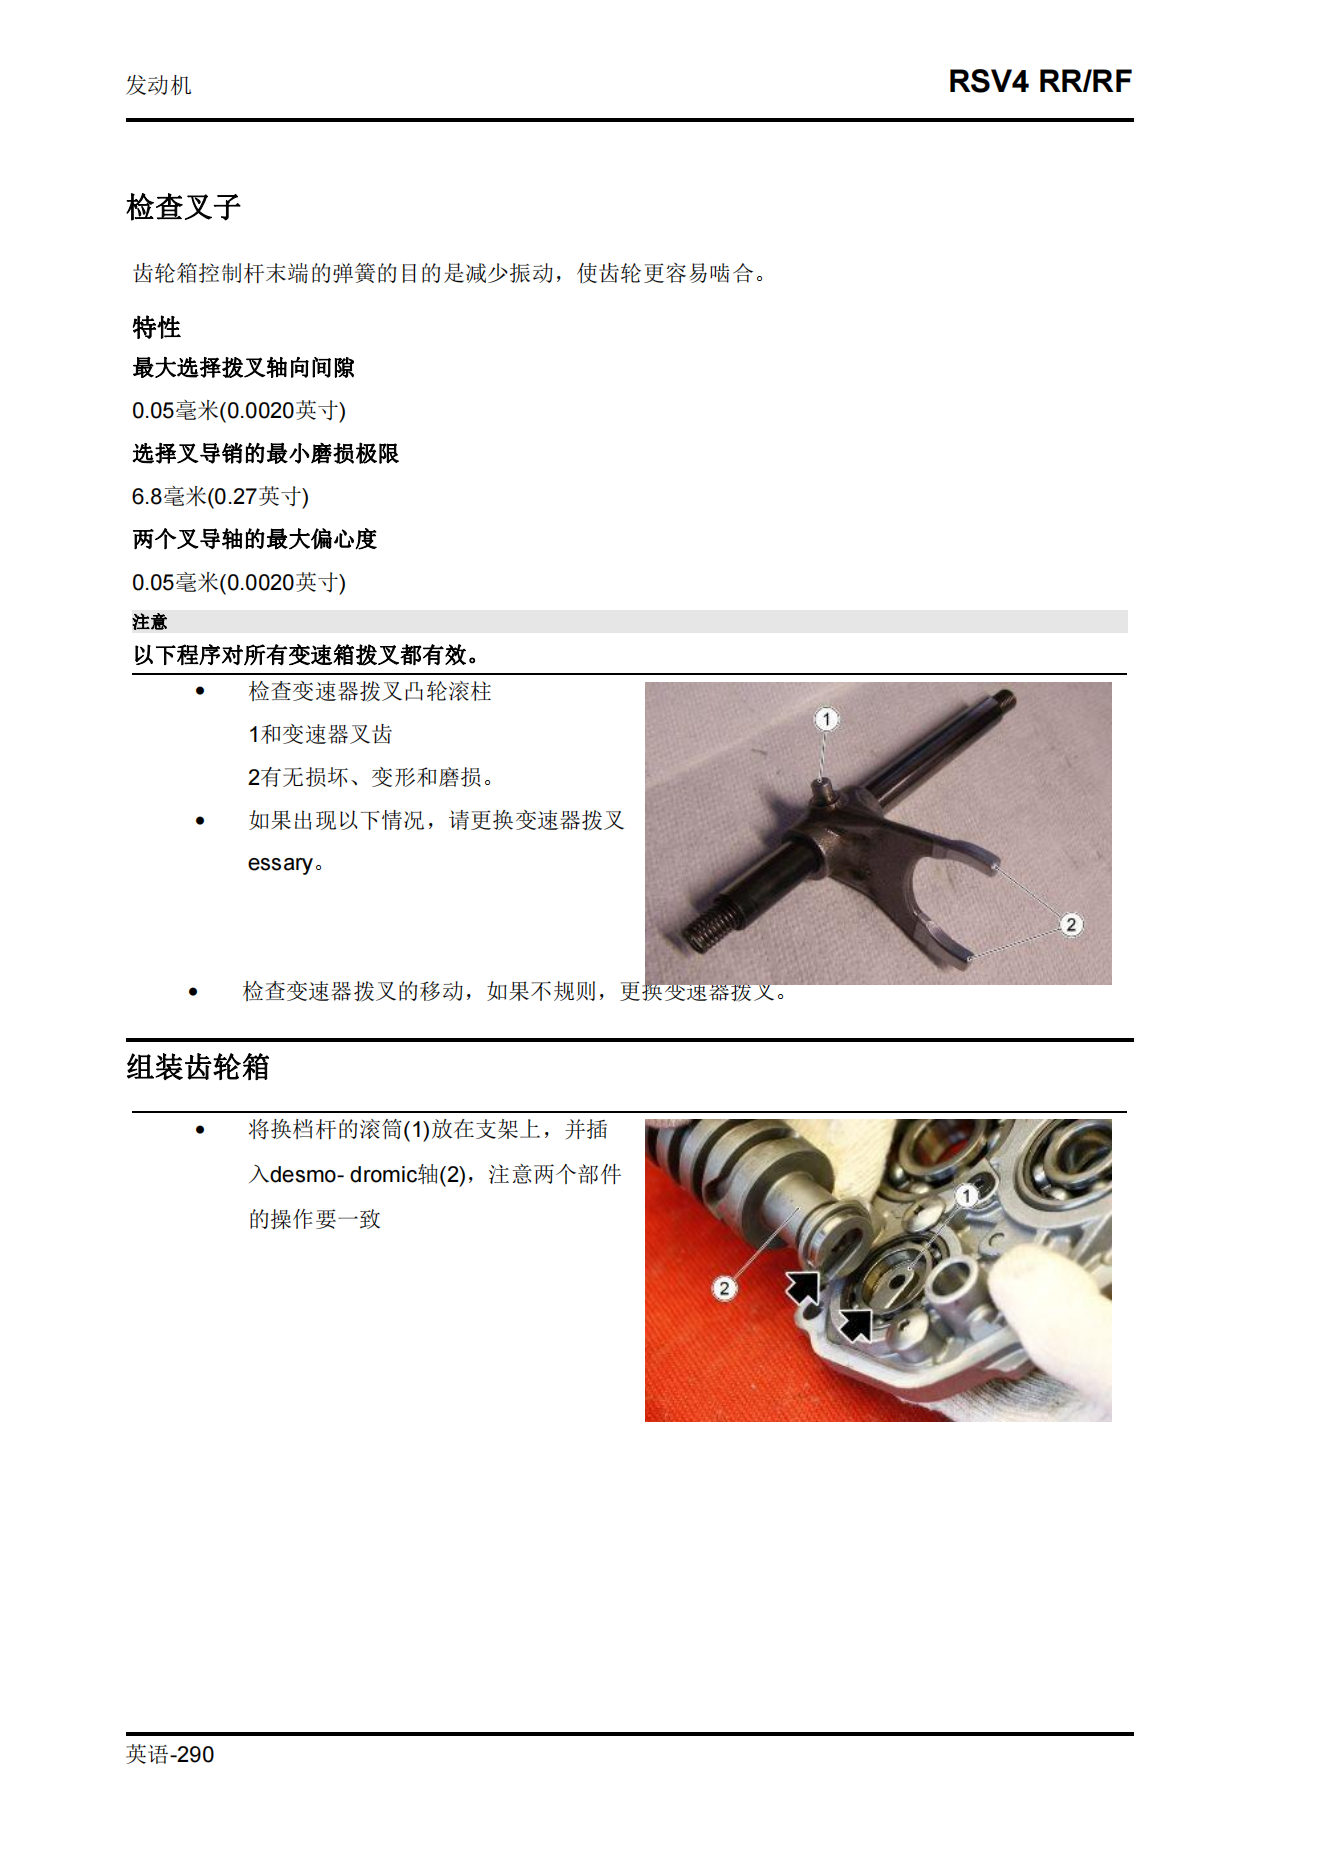 简体中文2015年阿普利亚rsv4rr-rf维修手册插图4